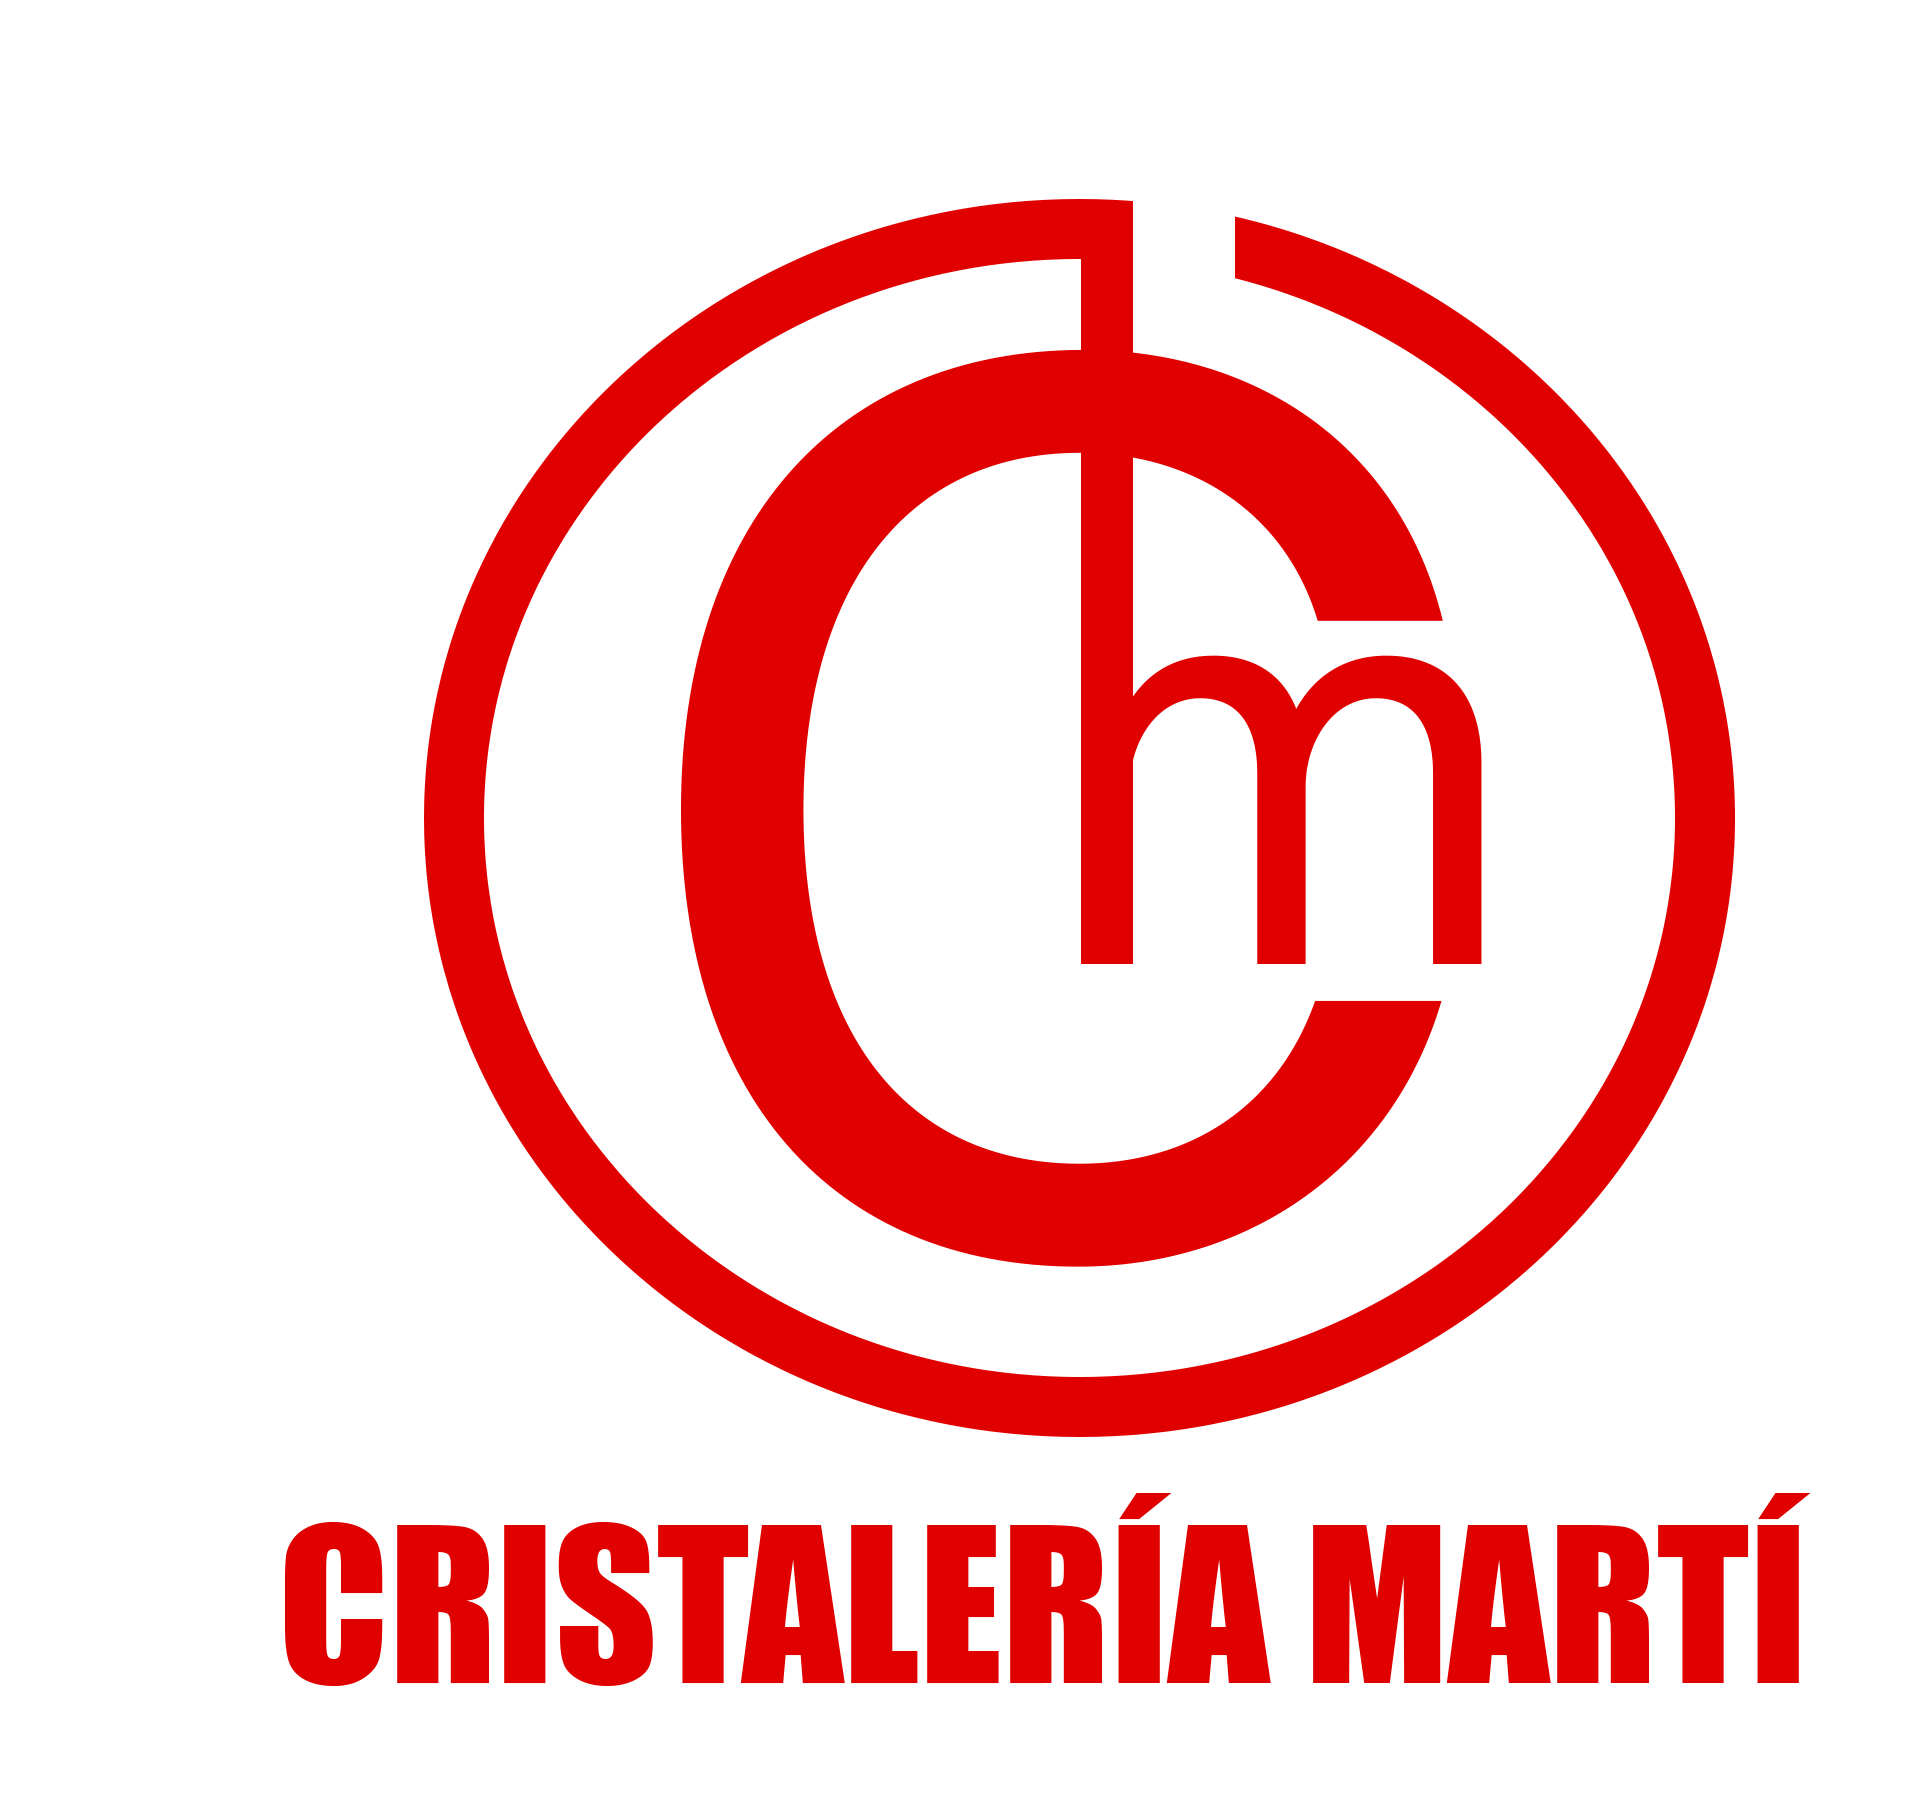 CRISTALERIA MARTÍ OBRERA F.V.